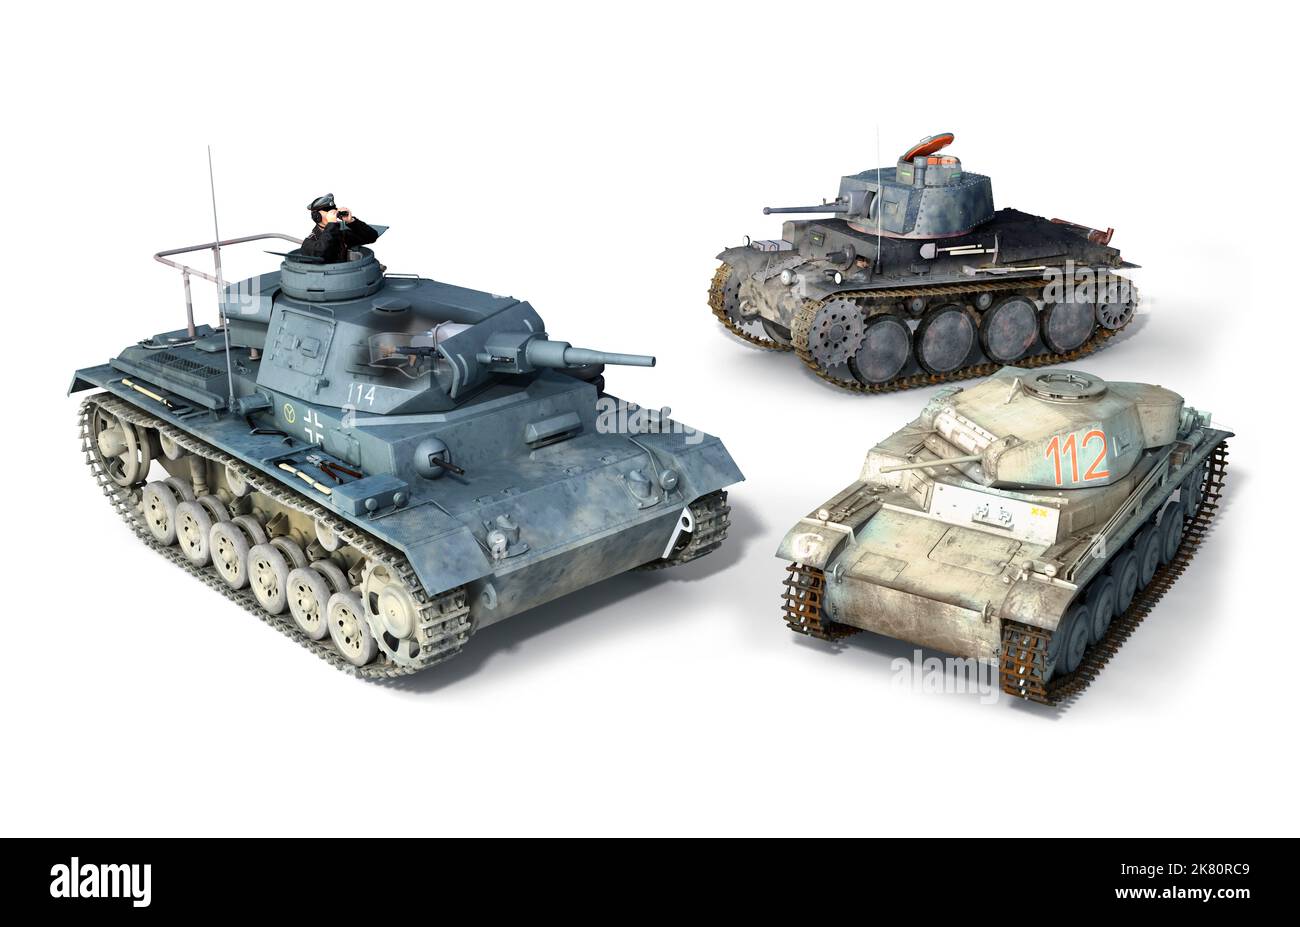 Les principaux chars de l'armée allemande pendant la Seconde Guerre mondiale; le Panzer léger II, le Panzer moyen II et le Pz 38. Banque D'Images